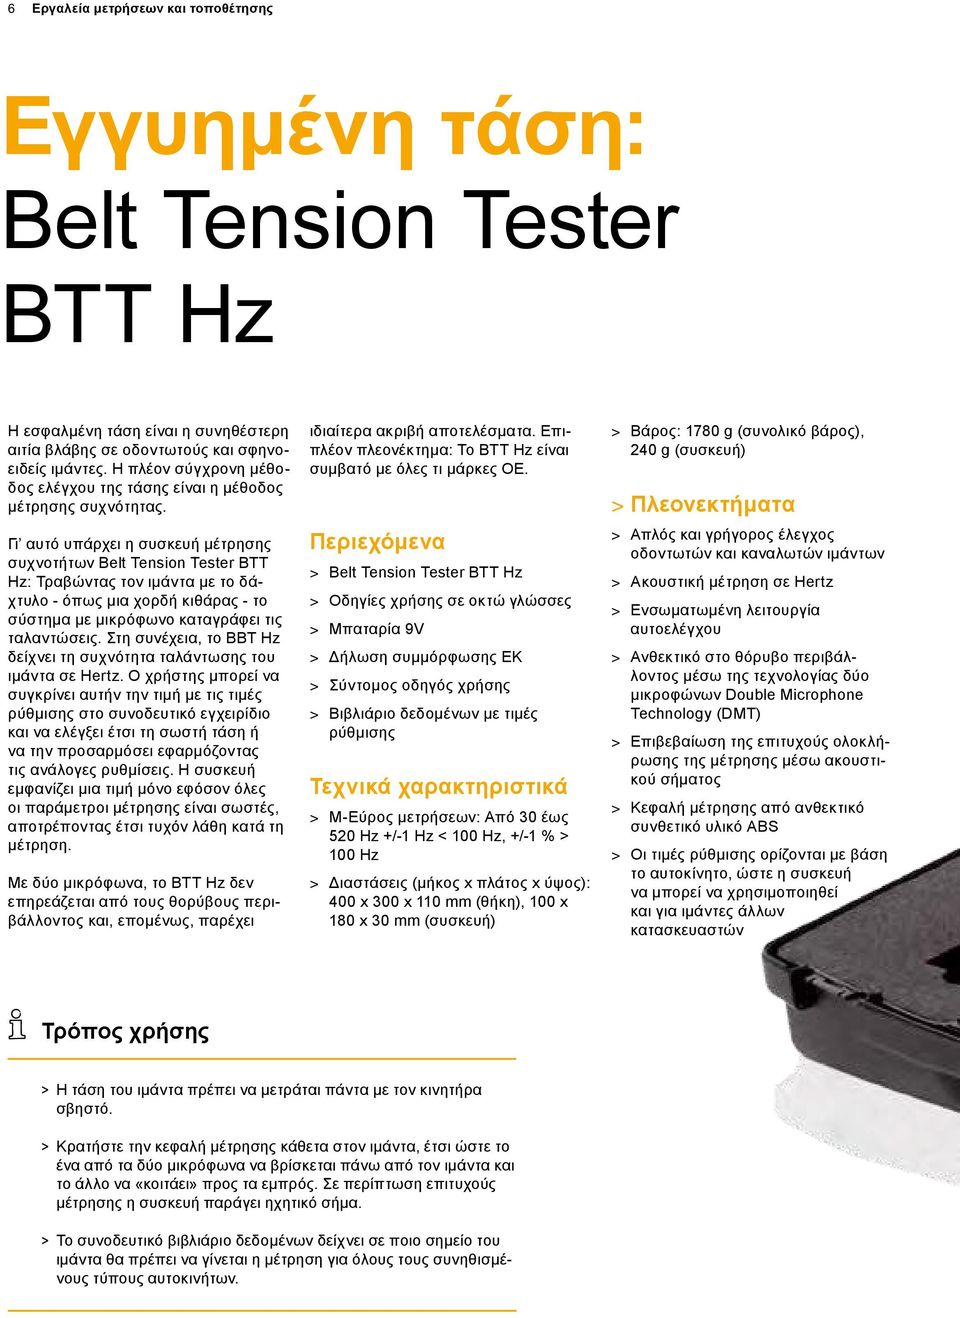 Γι αυτό υπάρχει η συσκευή μέτρησης συχνοτήτων Belt Tension Tester BTT Hz: Τραβώντας τον ιμάντα με το δάχτυλο - όπως μια χορδή κιθάρας - το σύστημα με μικρόφωνο καταγράφει τις ταλαντώσεις.